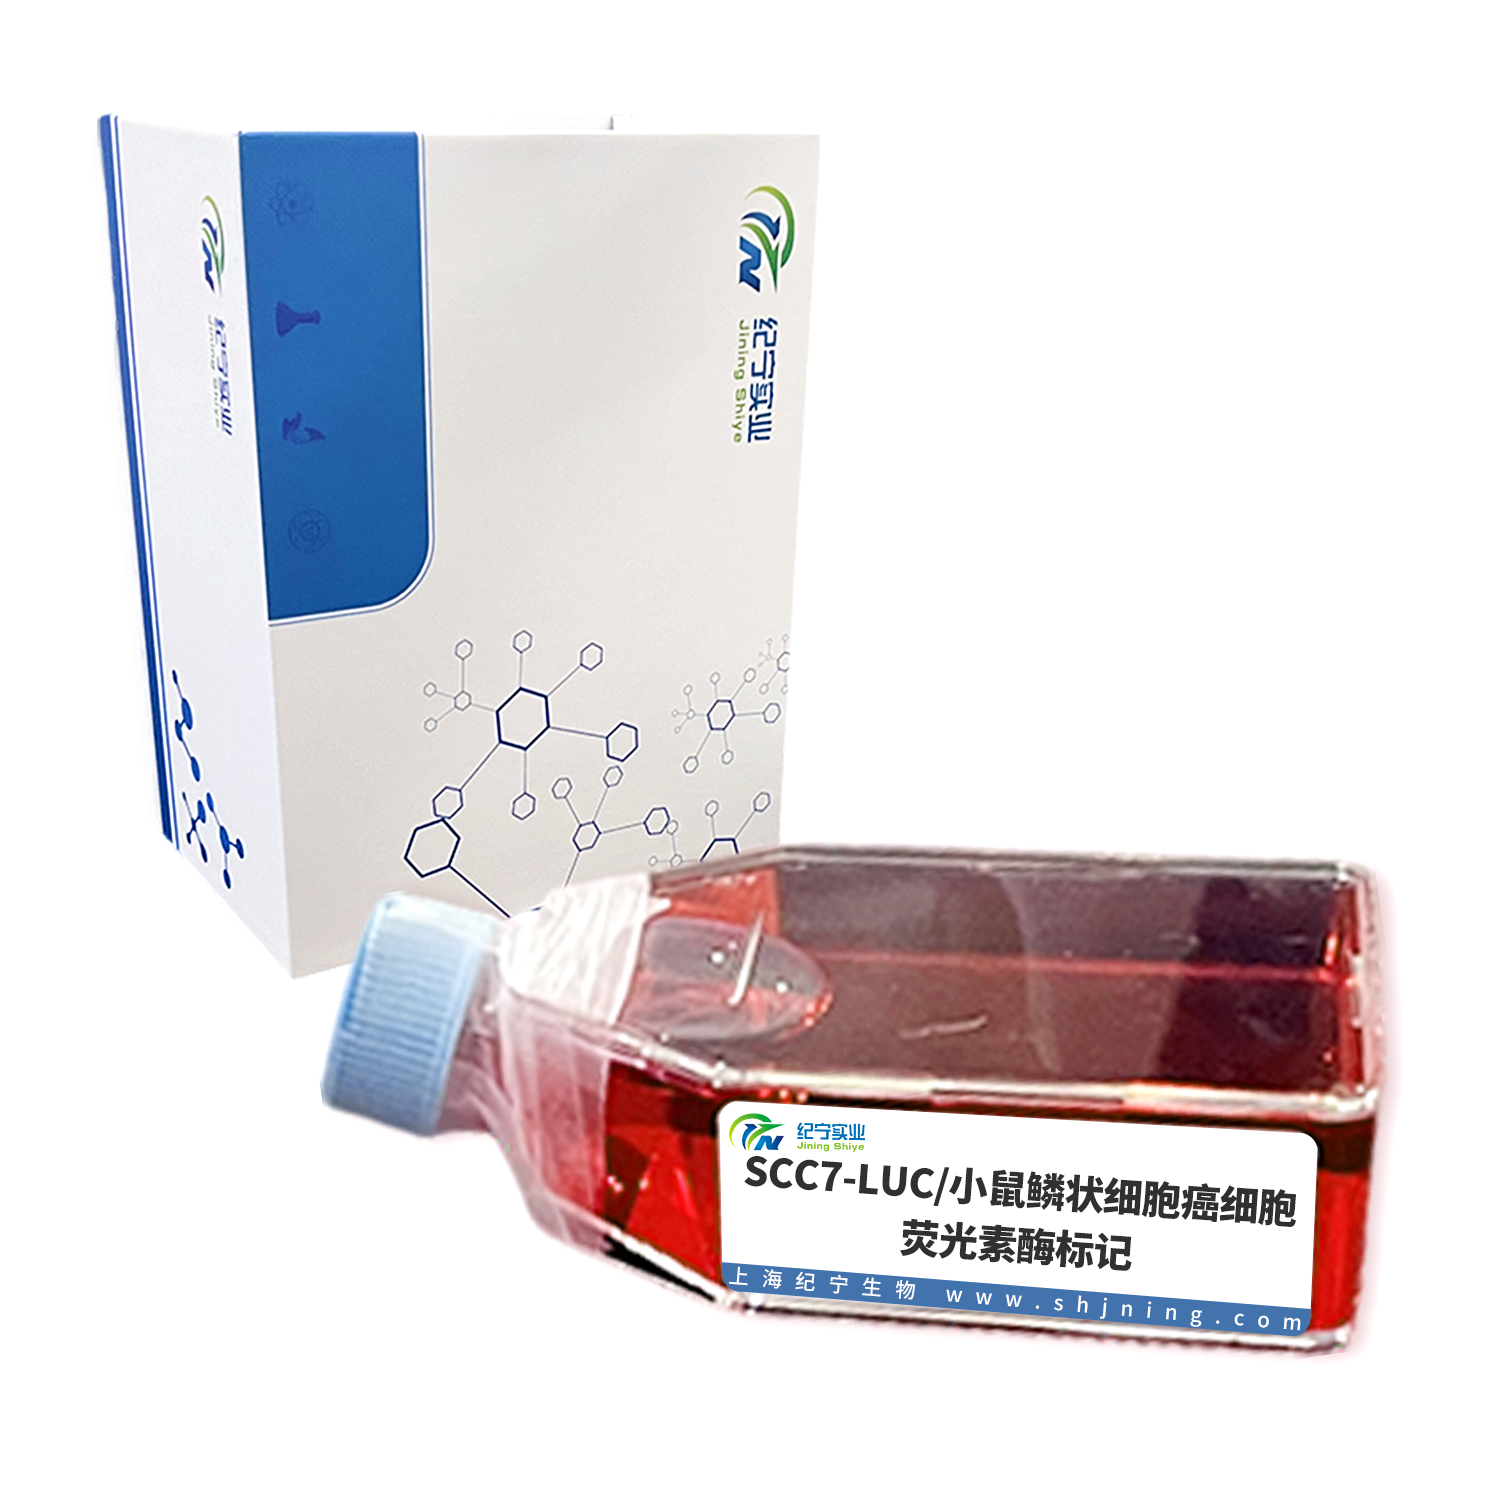 SCC7-LUC/小鼠鳞状细胞癌细胞-荧光素酶标记